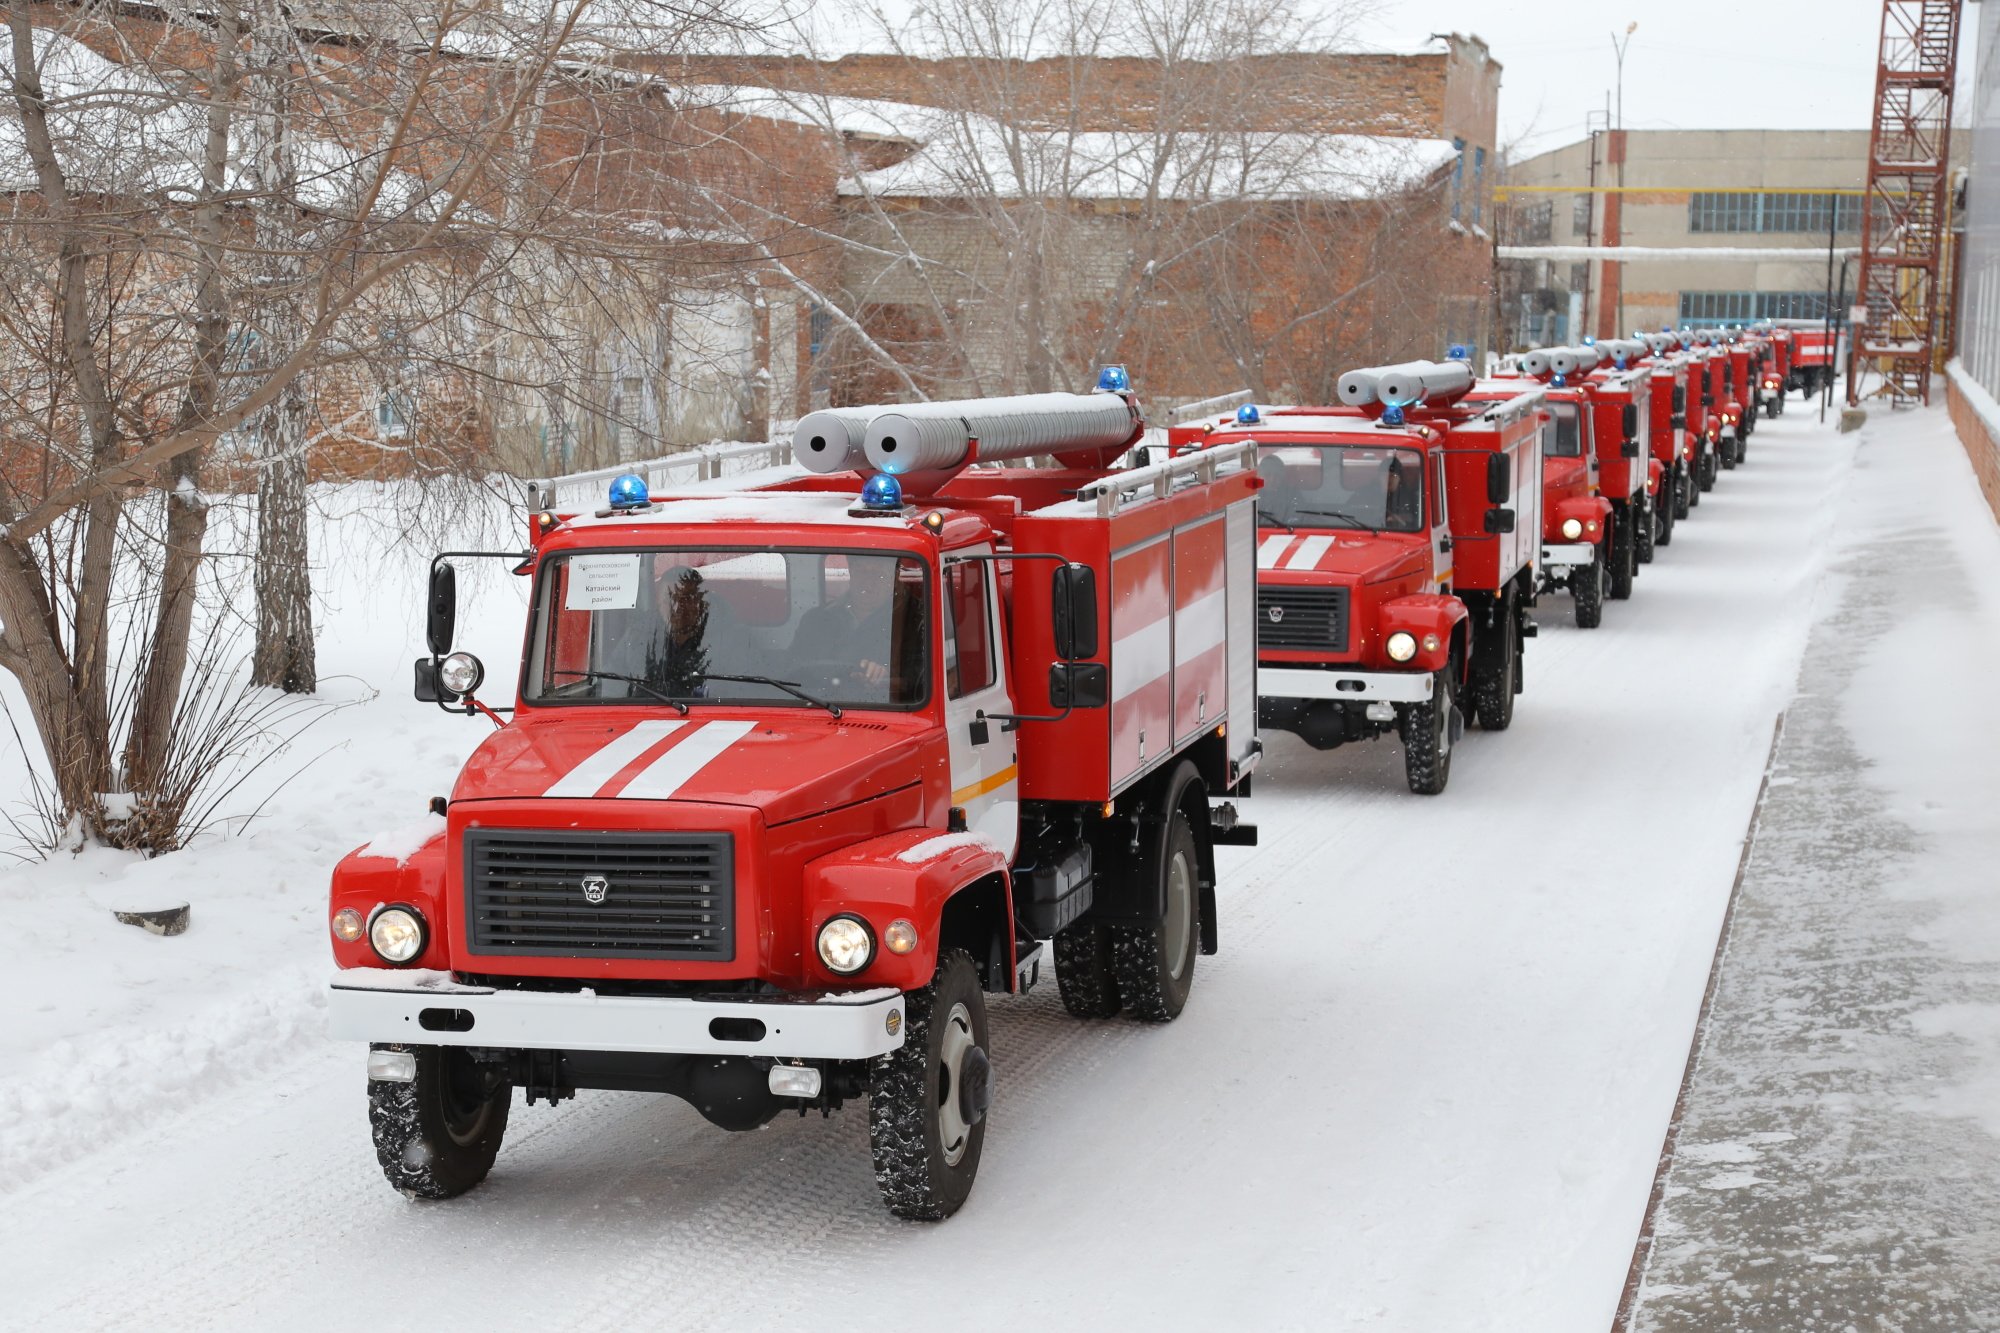 Пожарная газовая служба. АЦ 3,0-40 (33086). АЦ 2,5-40 (33086). ГАЗ 33086 пожарная автоцистерна. Пожарная машина МЧС.